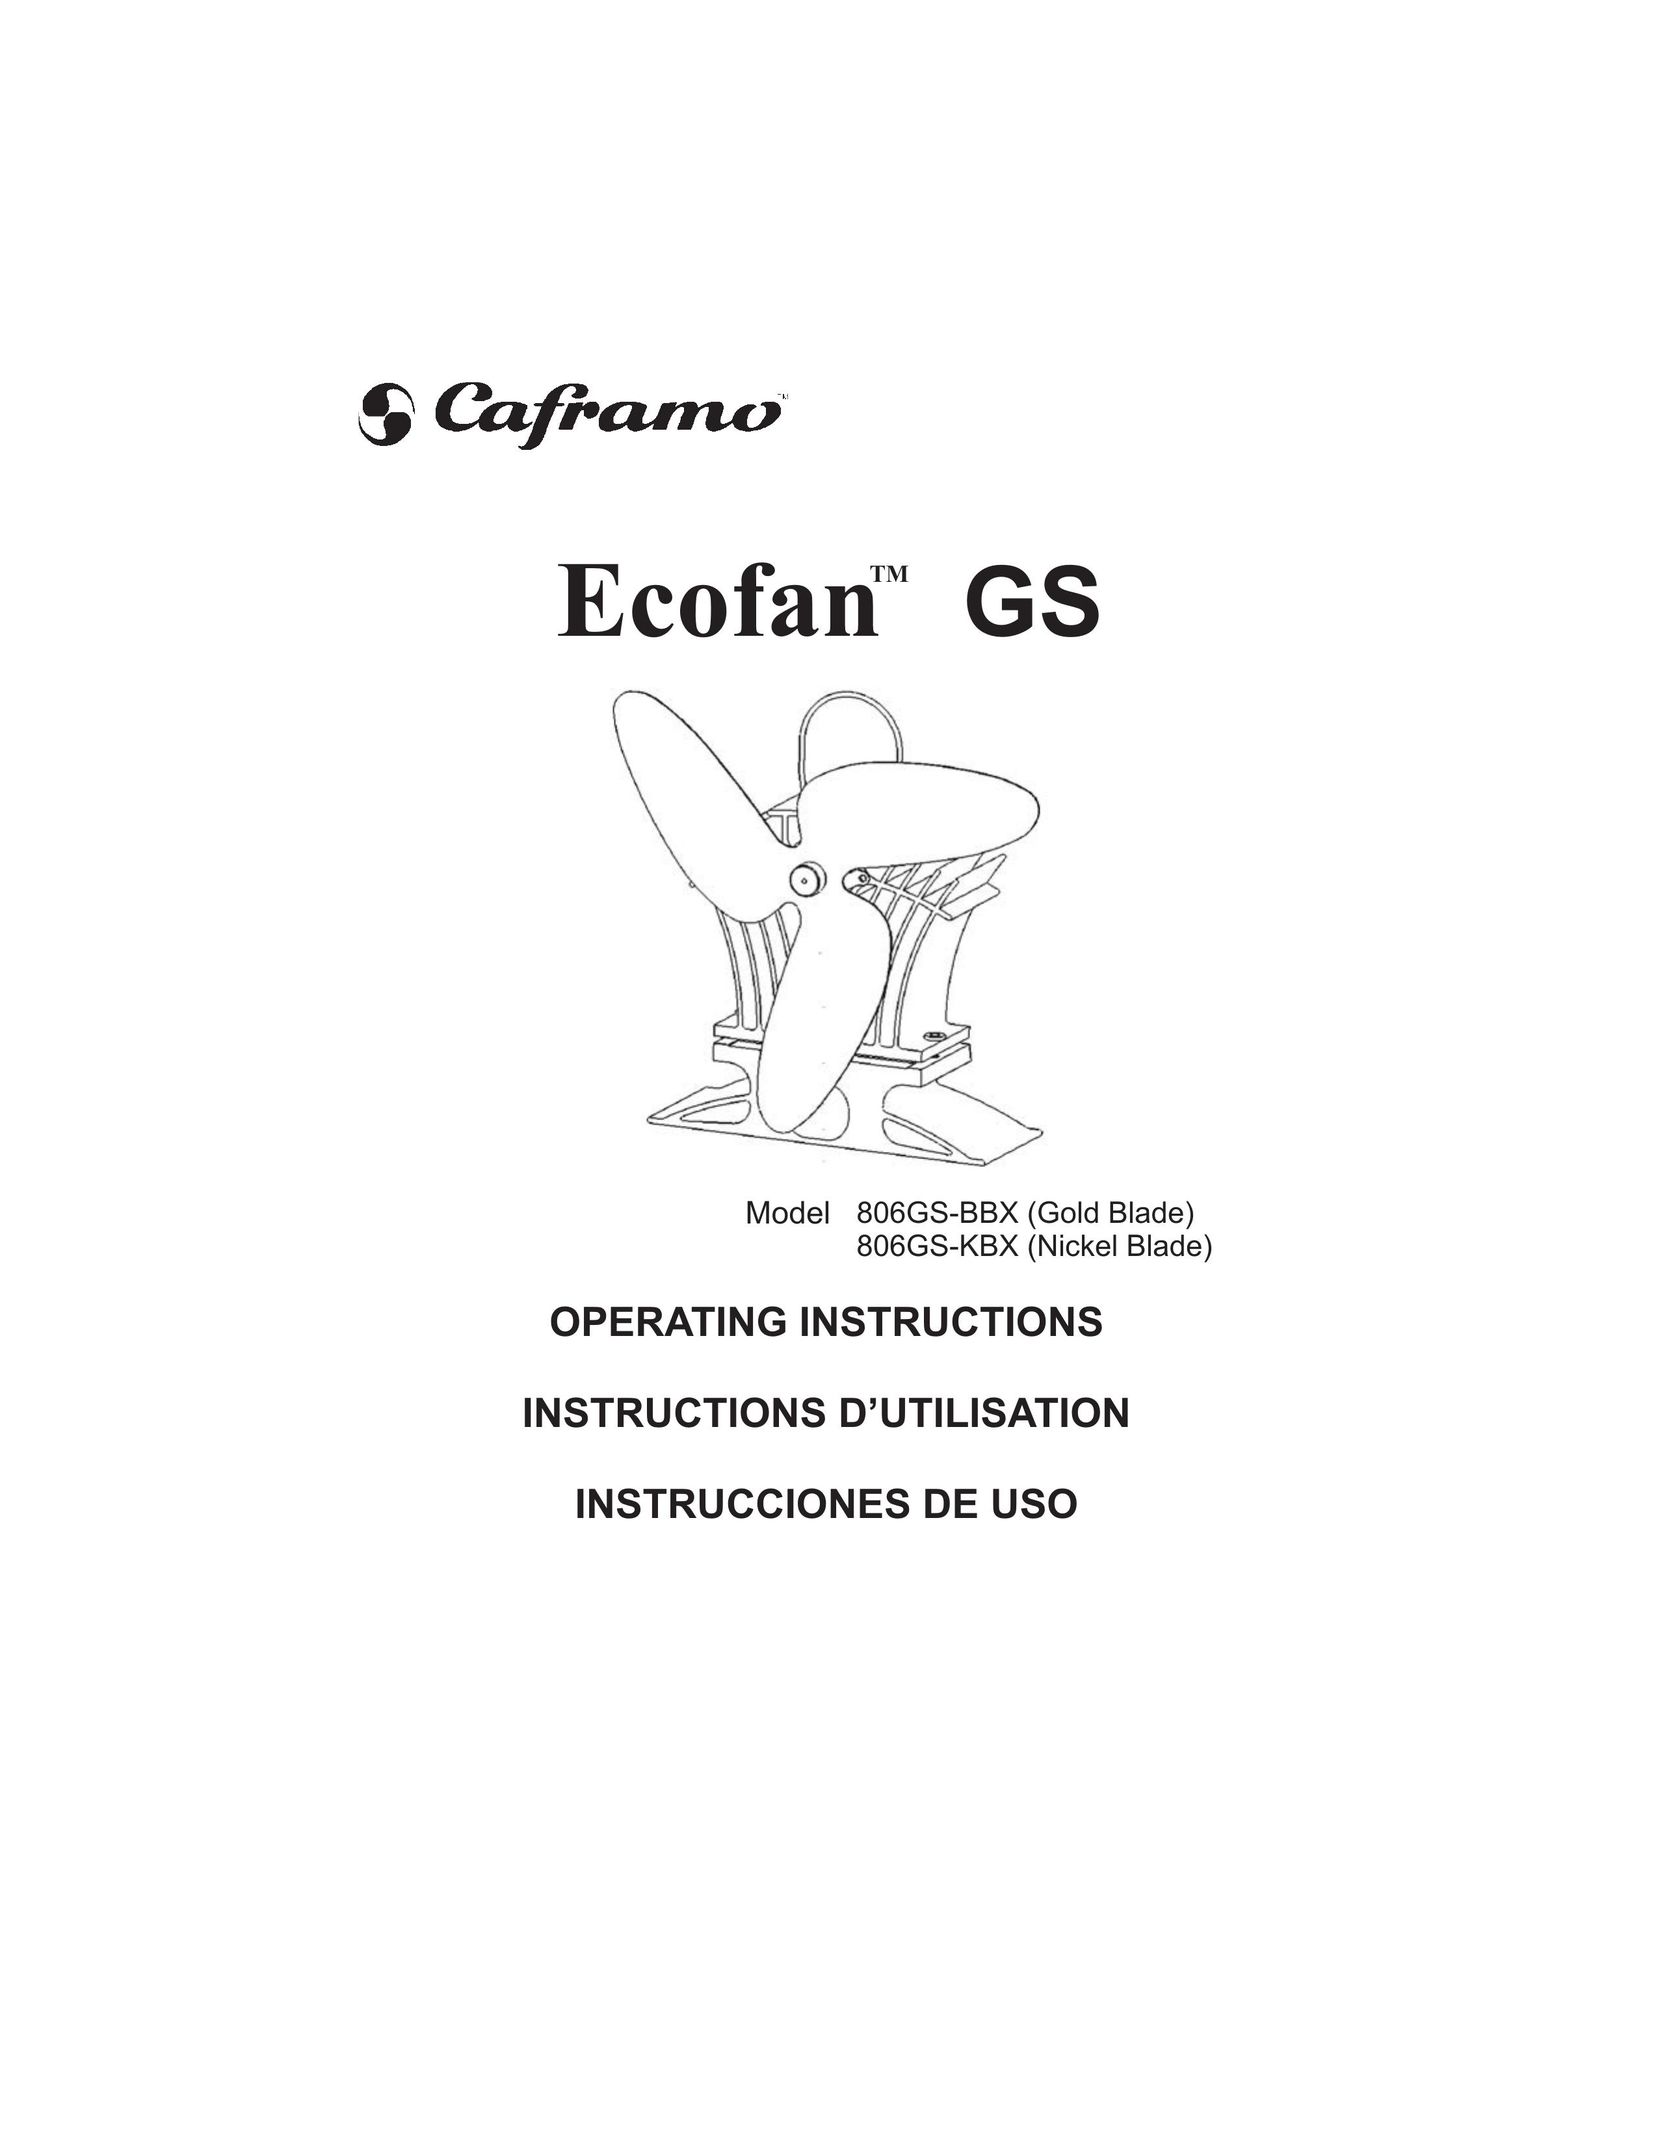 Caframo 806GS-BBX Fan User Manual